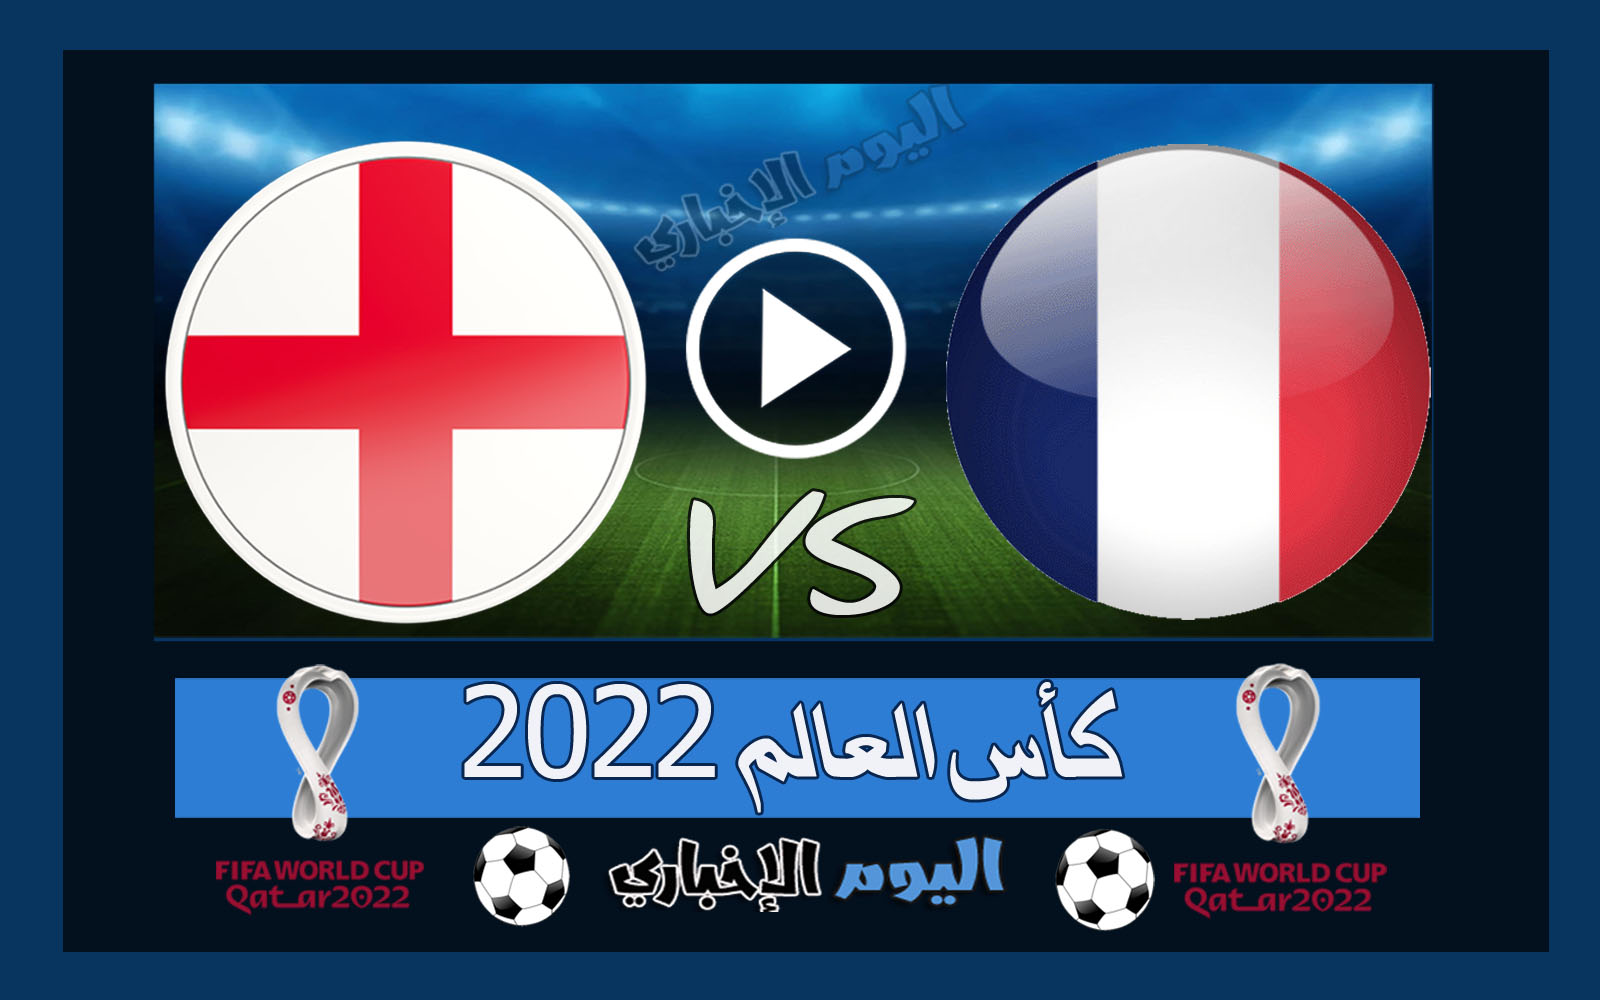 “الديوك تقصي الإنجليز” نتيجة مباراة فرنسا وانجلترا 2-1 اهداف اليوم في كأس العالم 2022